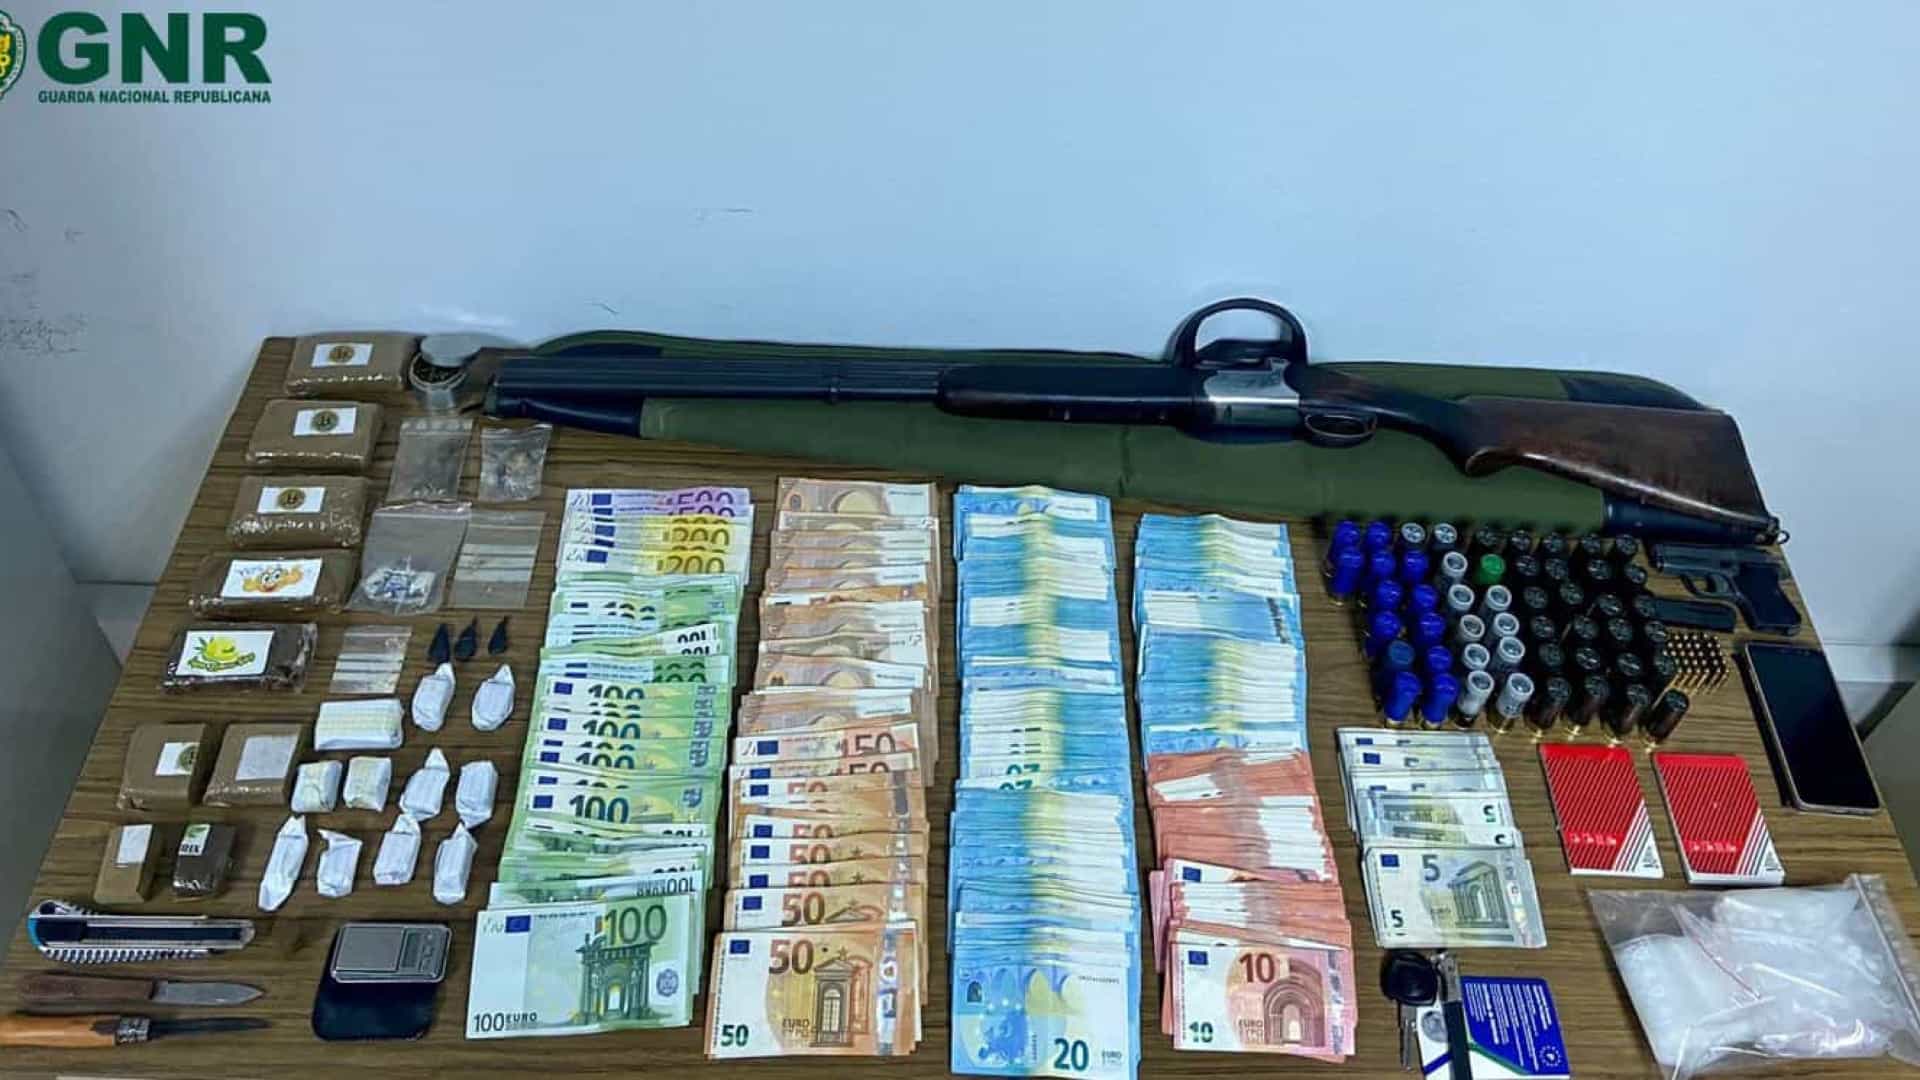 Homem detido com mais 1.500 doses de estupefaciente e 32 mil euros apreendidos